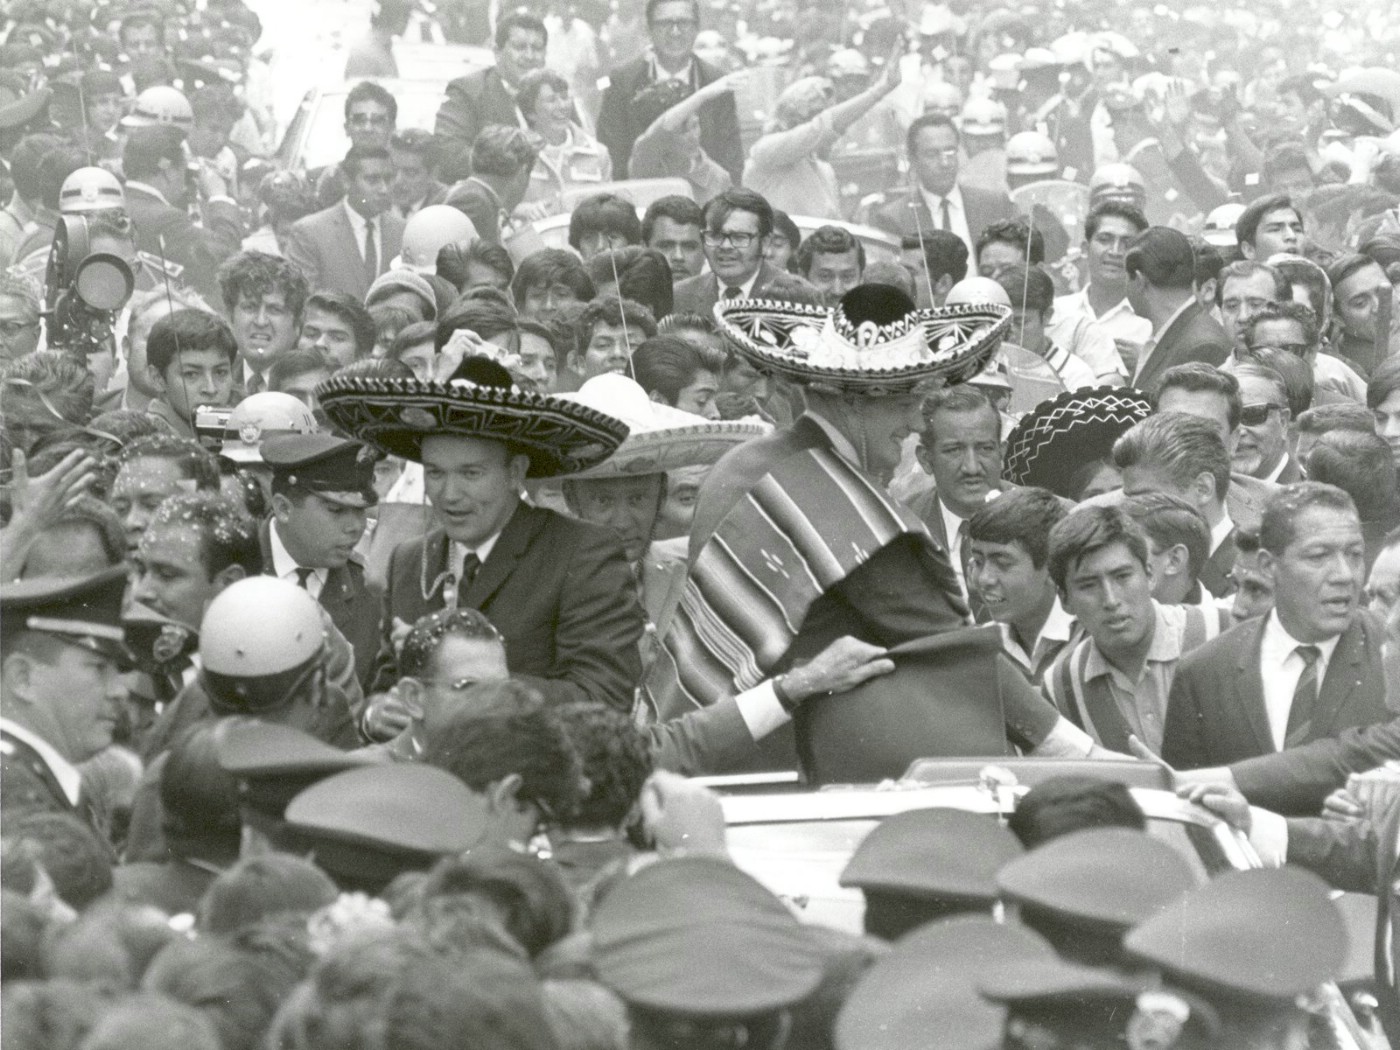 壁纸1400x1050One Giant Leap for Mankind  Apollo 11 Astronauts Swarmed by Thousands In Mexico City Parade 墨西哥城的庆祝游行壁纸 阿波罗11号登月40周年纪念壁纸壁纸 阿波罗11号登月40周年纪念壁纸图片 阿波罗11号登月40周年纪念壁纸素材 人文壁纸 人文图库 人文图片素材桌面壁纸